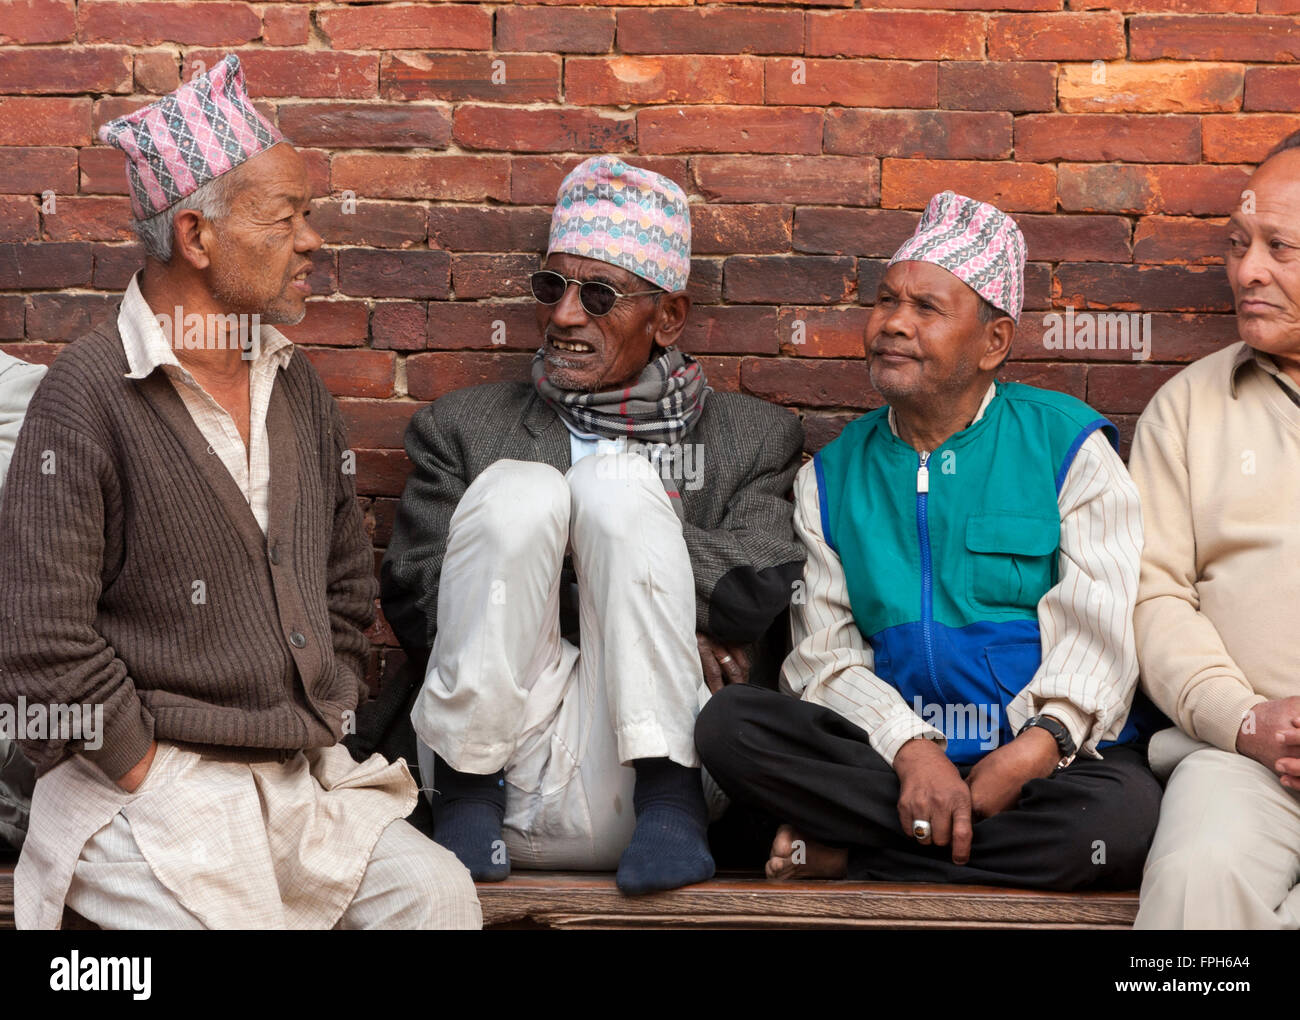 Le Népal, Patan. Les hommes portant des chapeaux traditionnels assis sur un banc, par le Palais Royal, Durbar Square. Banque D'Images